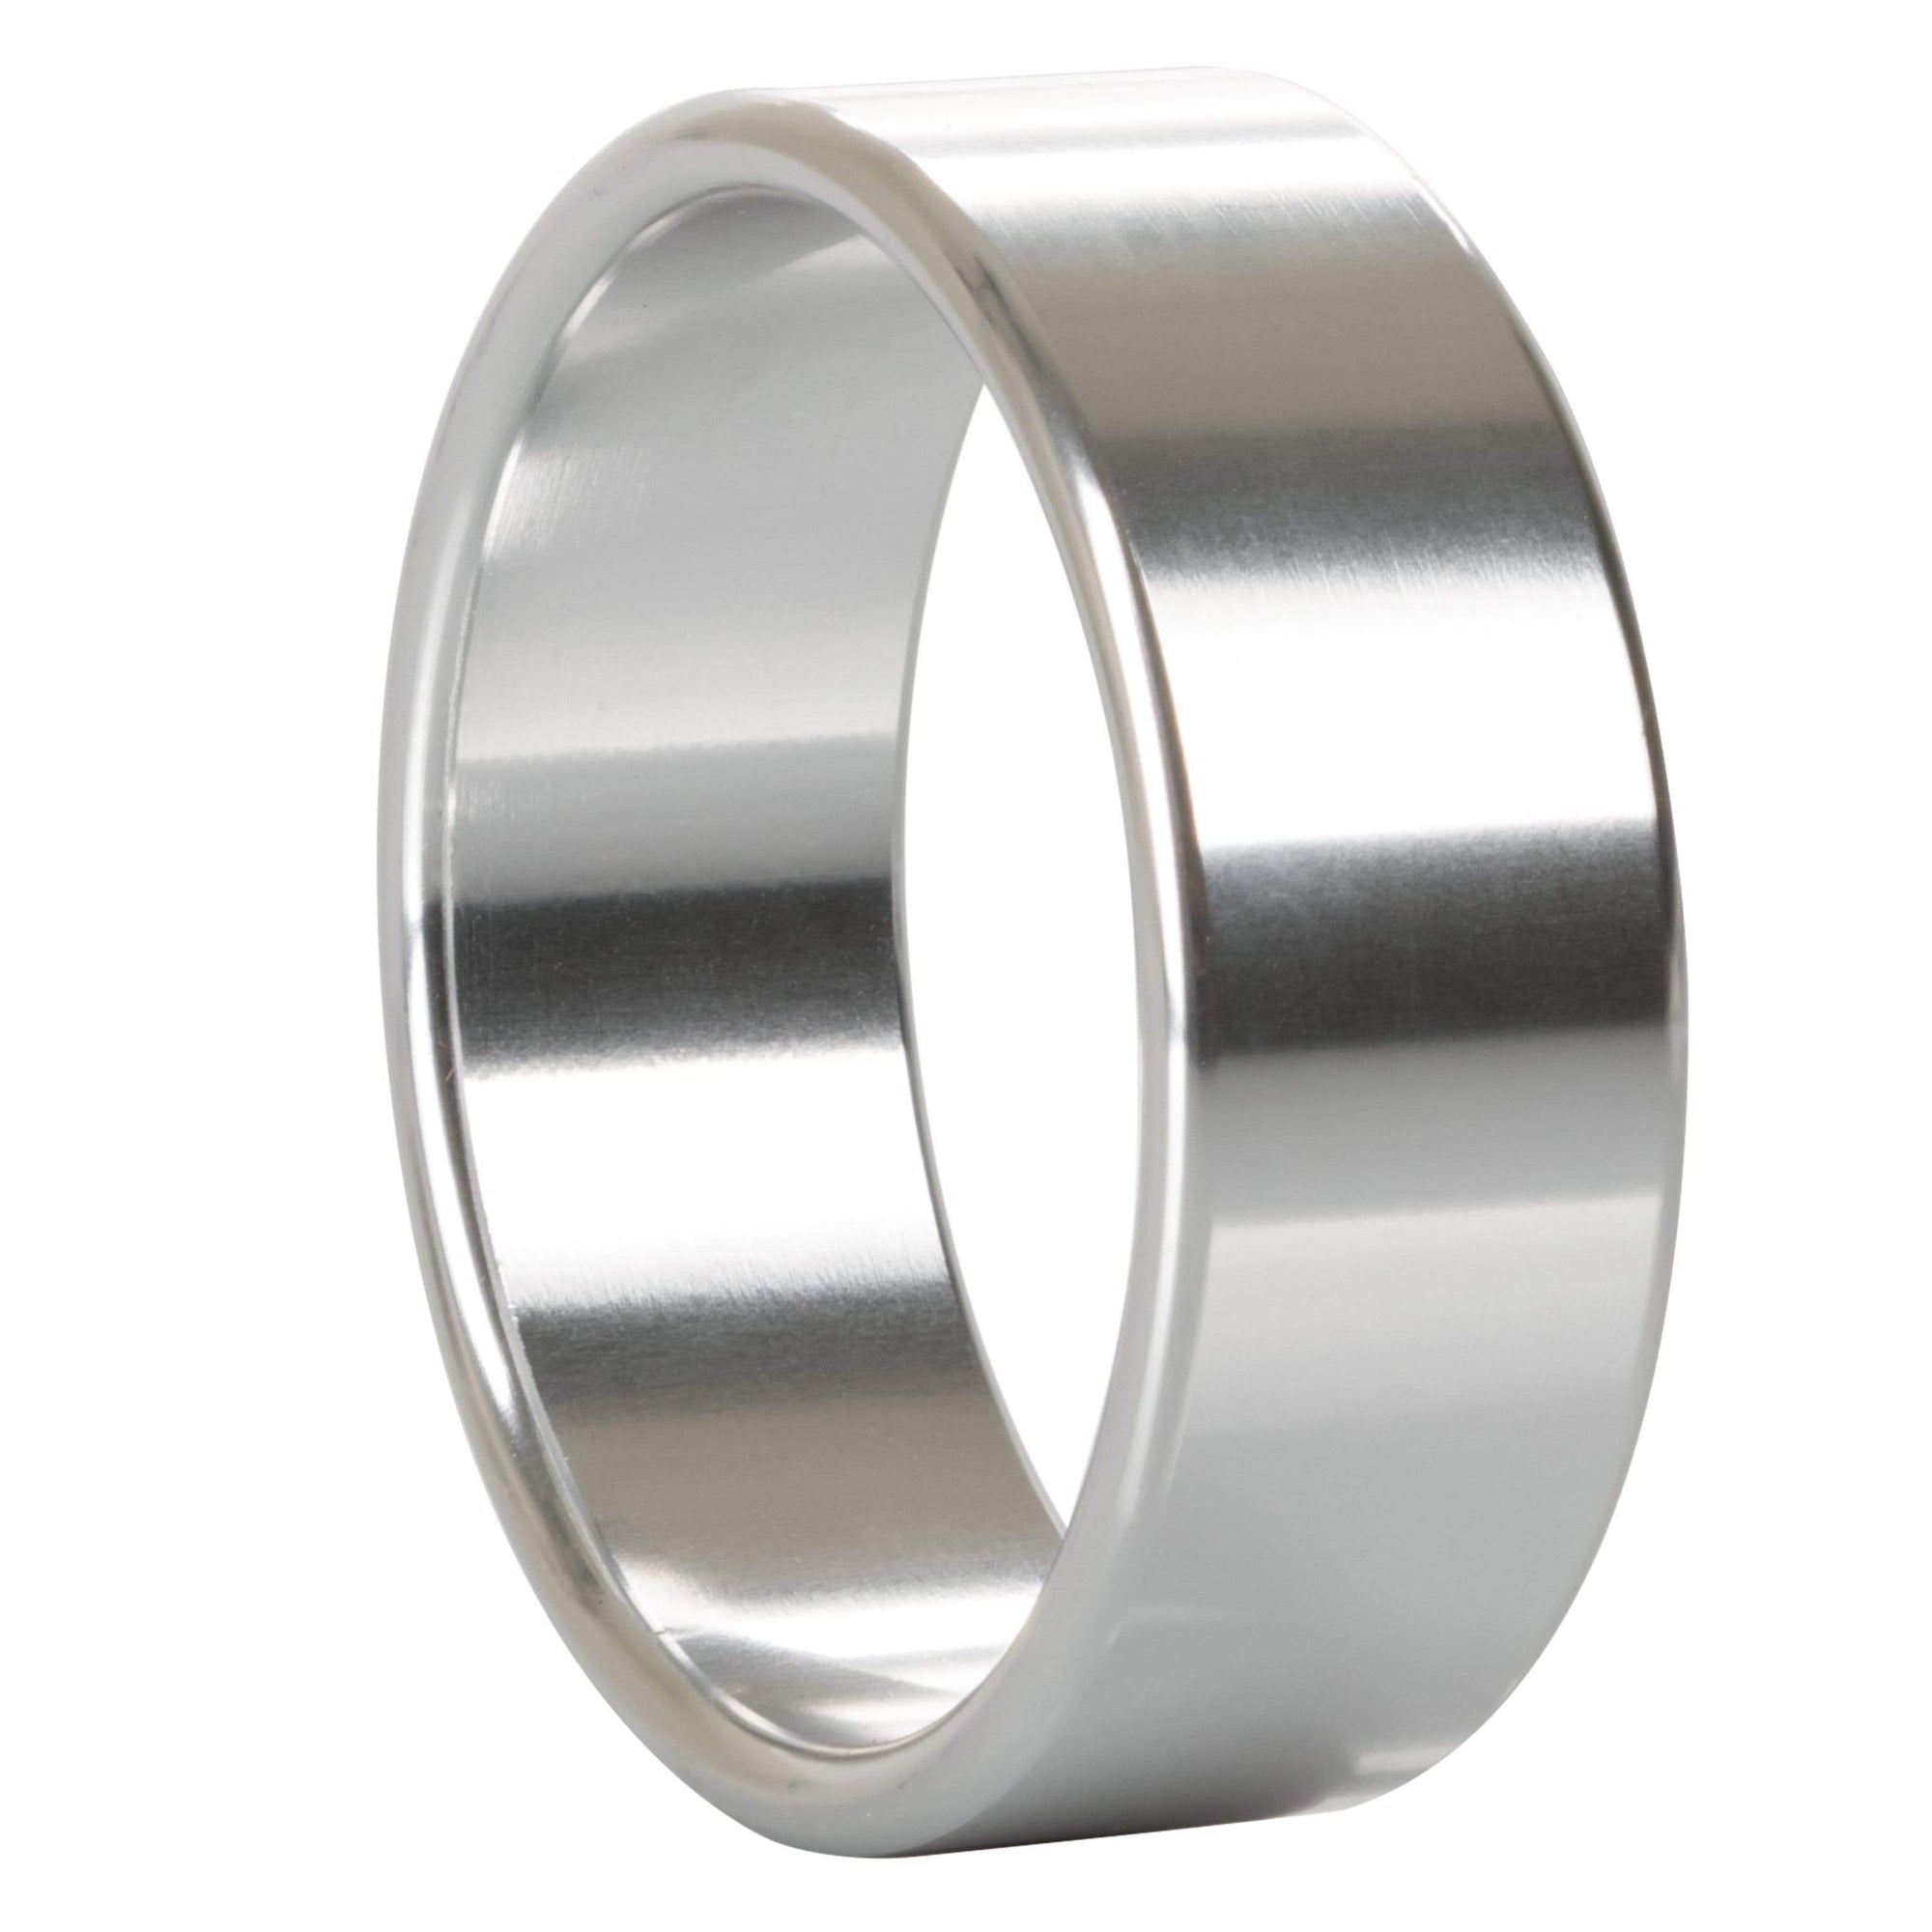 California Exotics - Alloy Metallic Cock Ring Extra Large (Silver) Metal Cock Ring (Non Vibration) Durio Asia